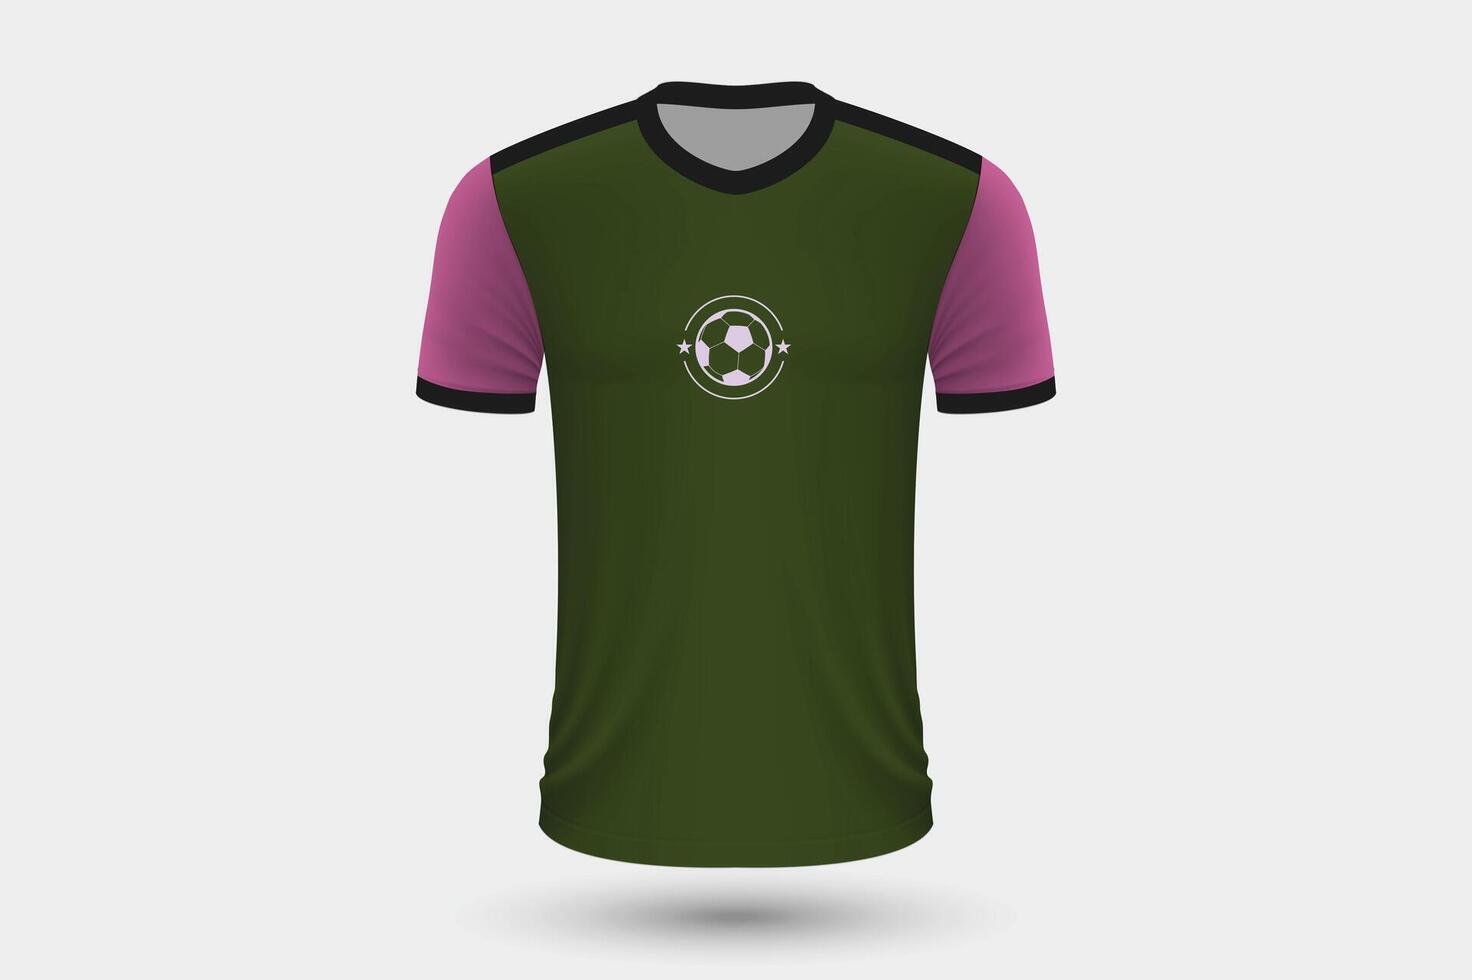 realista fútbol camisa Alemania hogar jersey modelo para fútbol americano equipo. vector